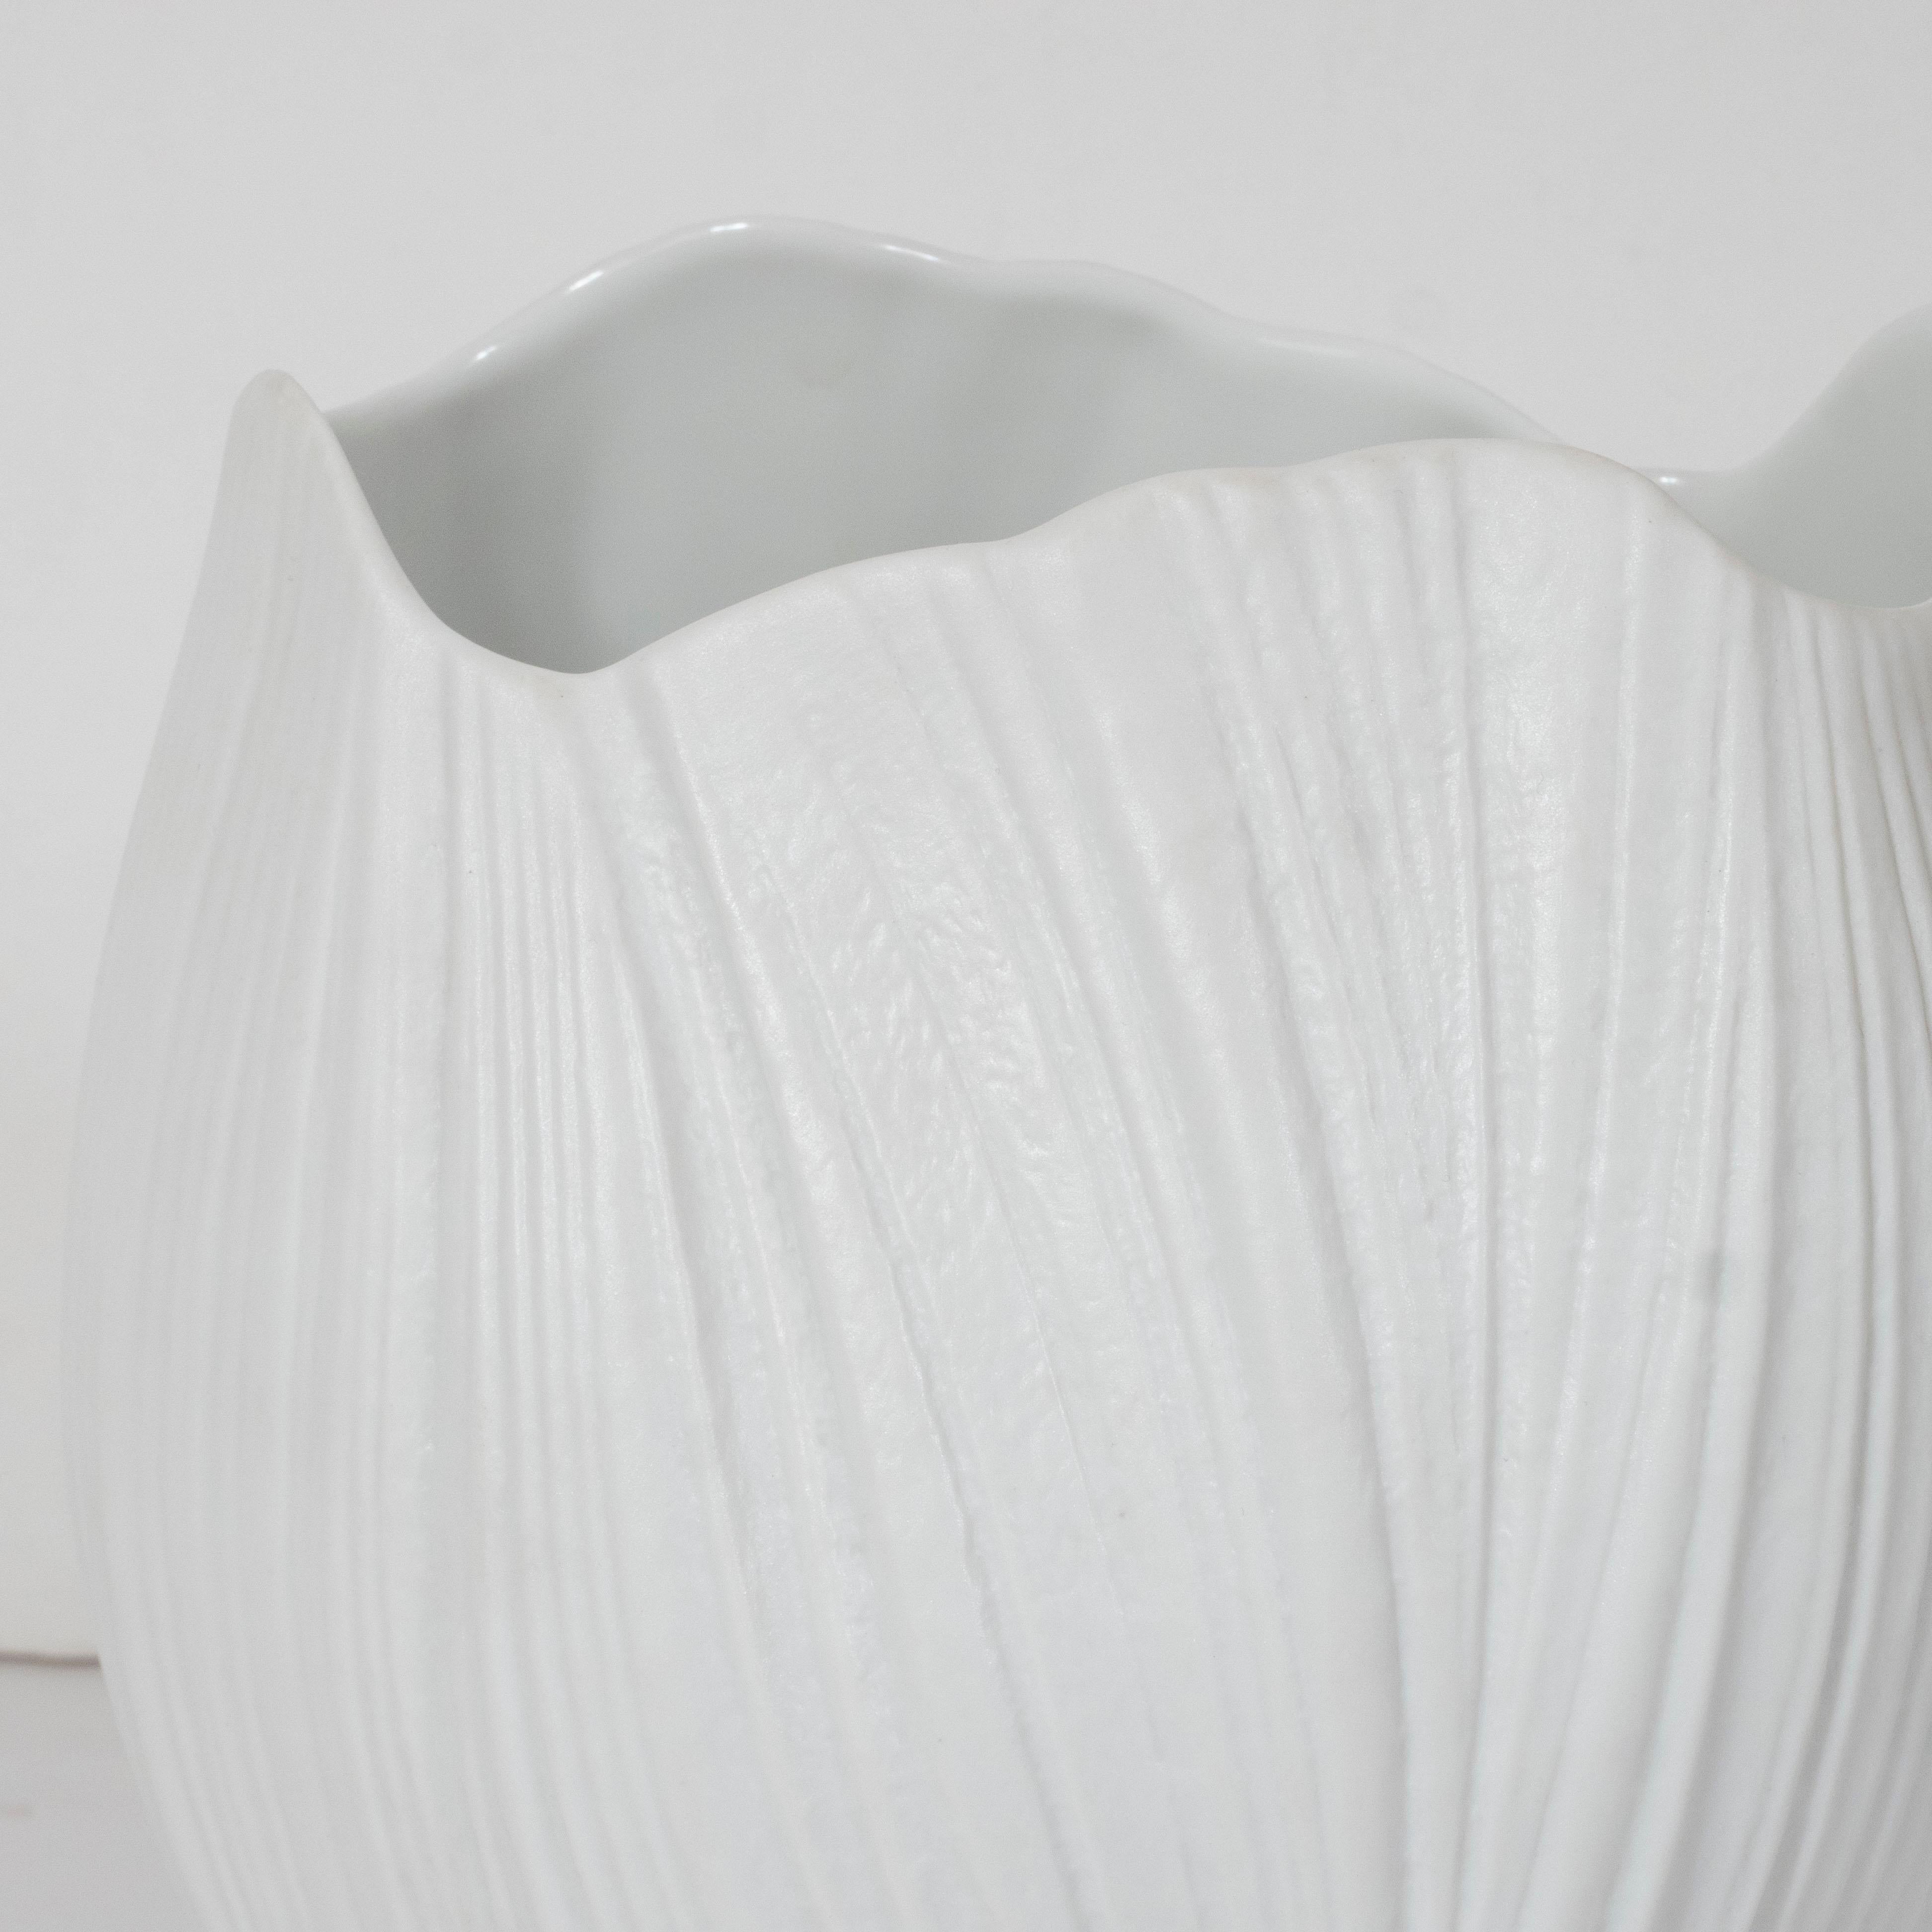 American Mid-Century Modern Striated White Ceramic Vase by Martin Freyer for Rosenthal